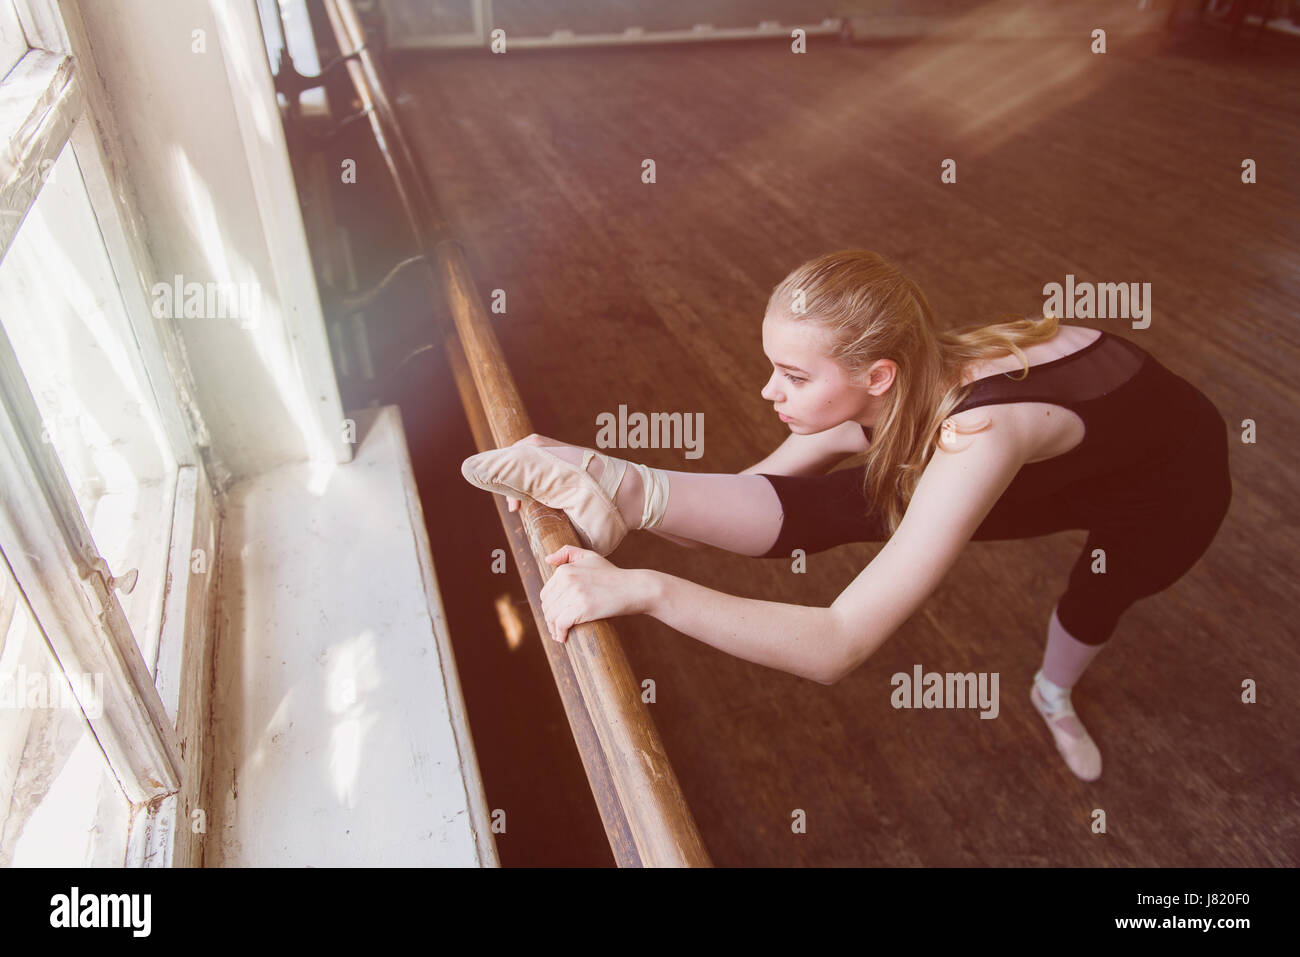 Weiblichen Balletttänzer stretching am Ballettstange. Oberen Geschossen. Stockfoto